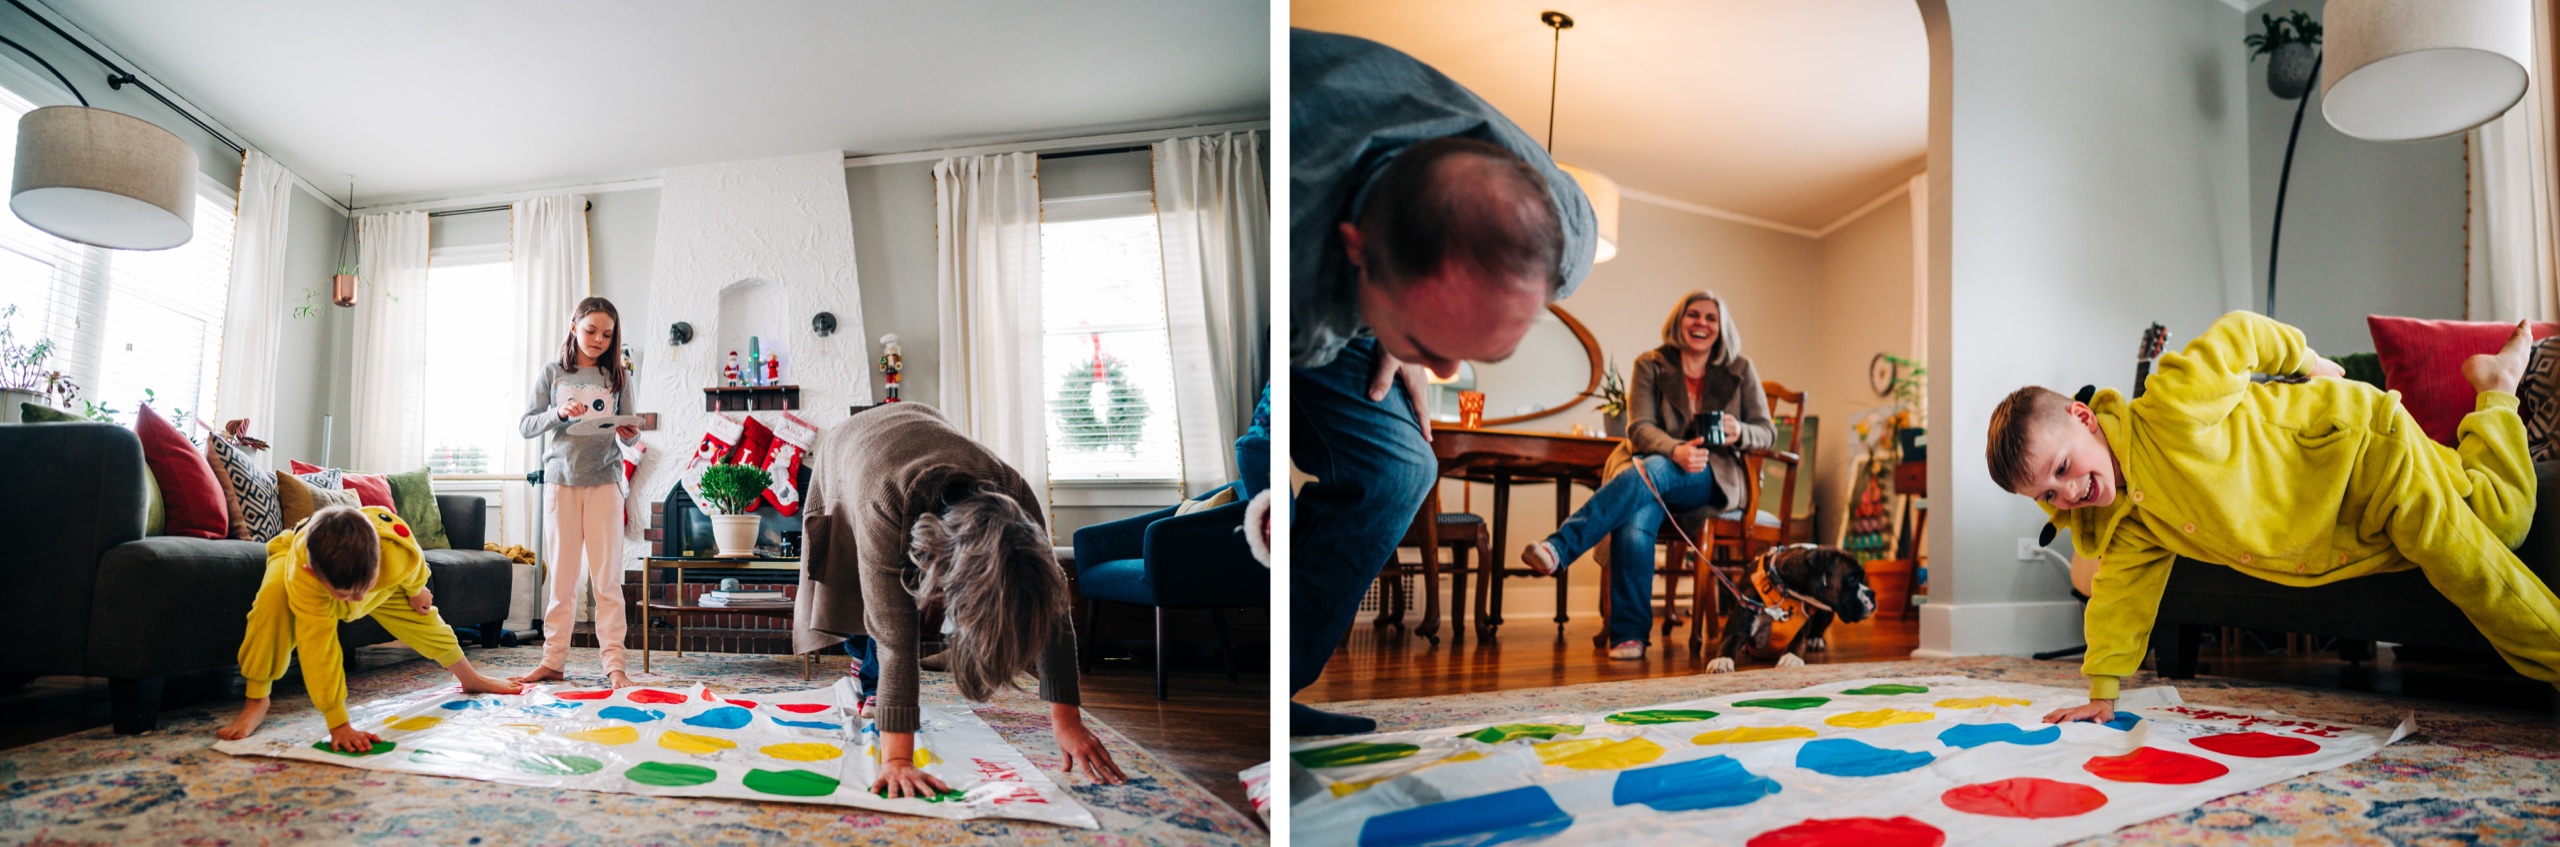 denver family photos game of Twister